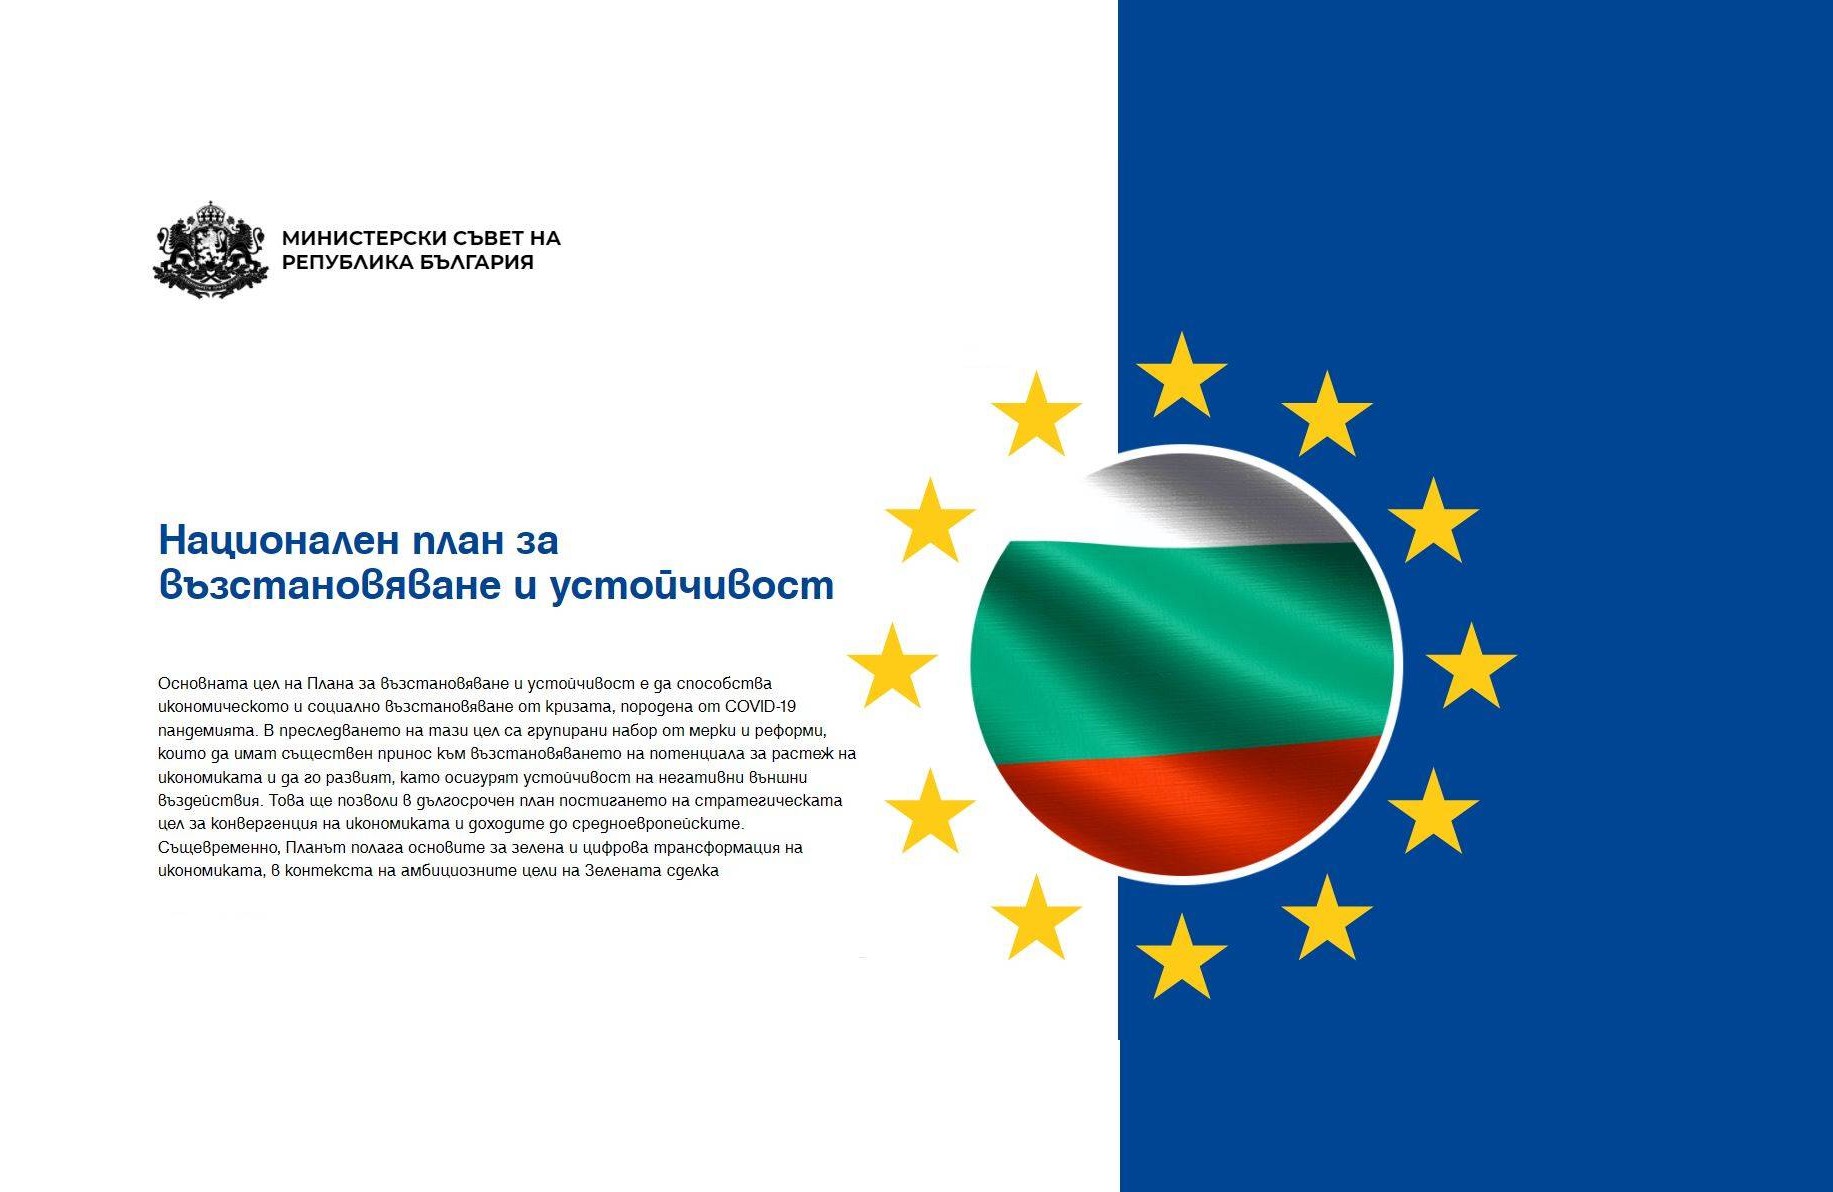 Първо годишно събитие по Плана за възстановяване и устойчивост на България